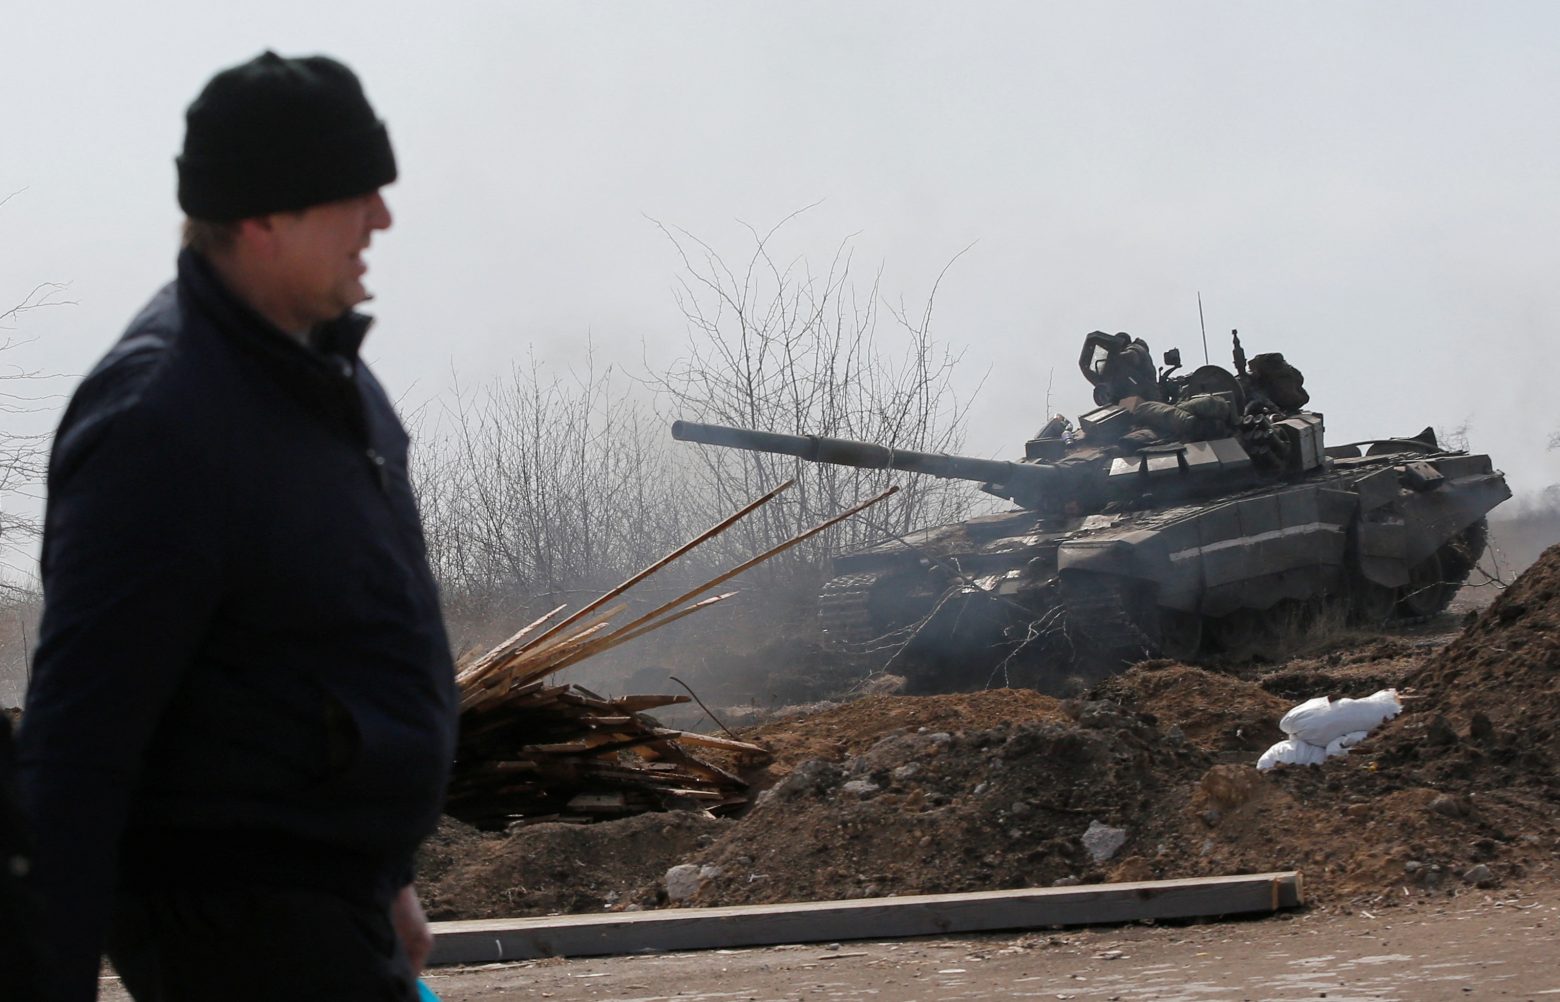 Ουκρανία: Ρωσικά πυραυλικά χτυπήματα σε Κίεβο και Λβιβ – Συνεχίζονται οι επιθέσεις στη Μαριούπολη